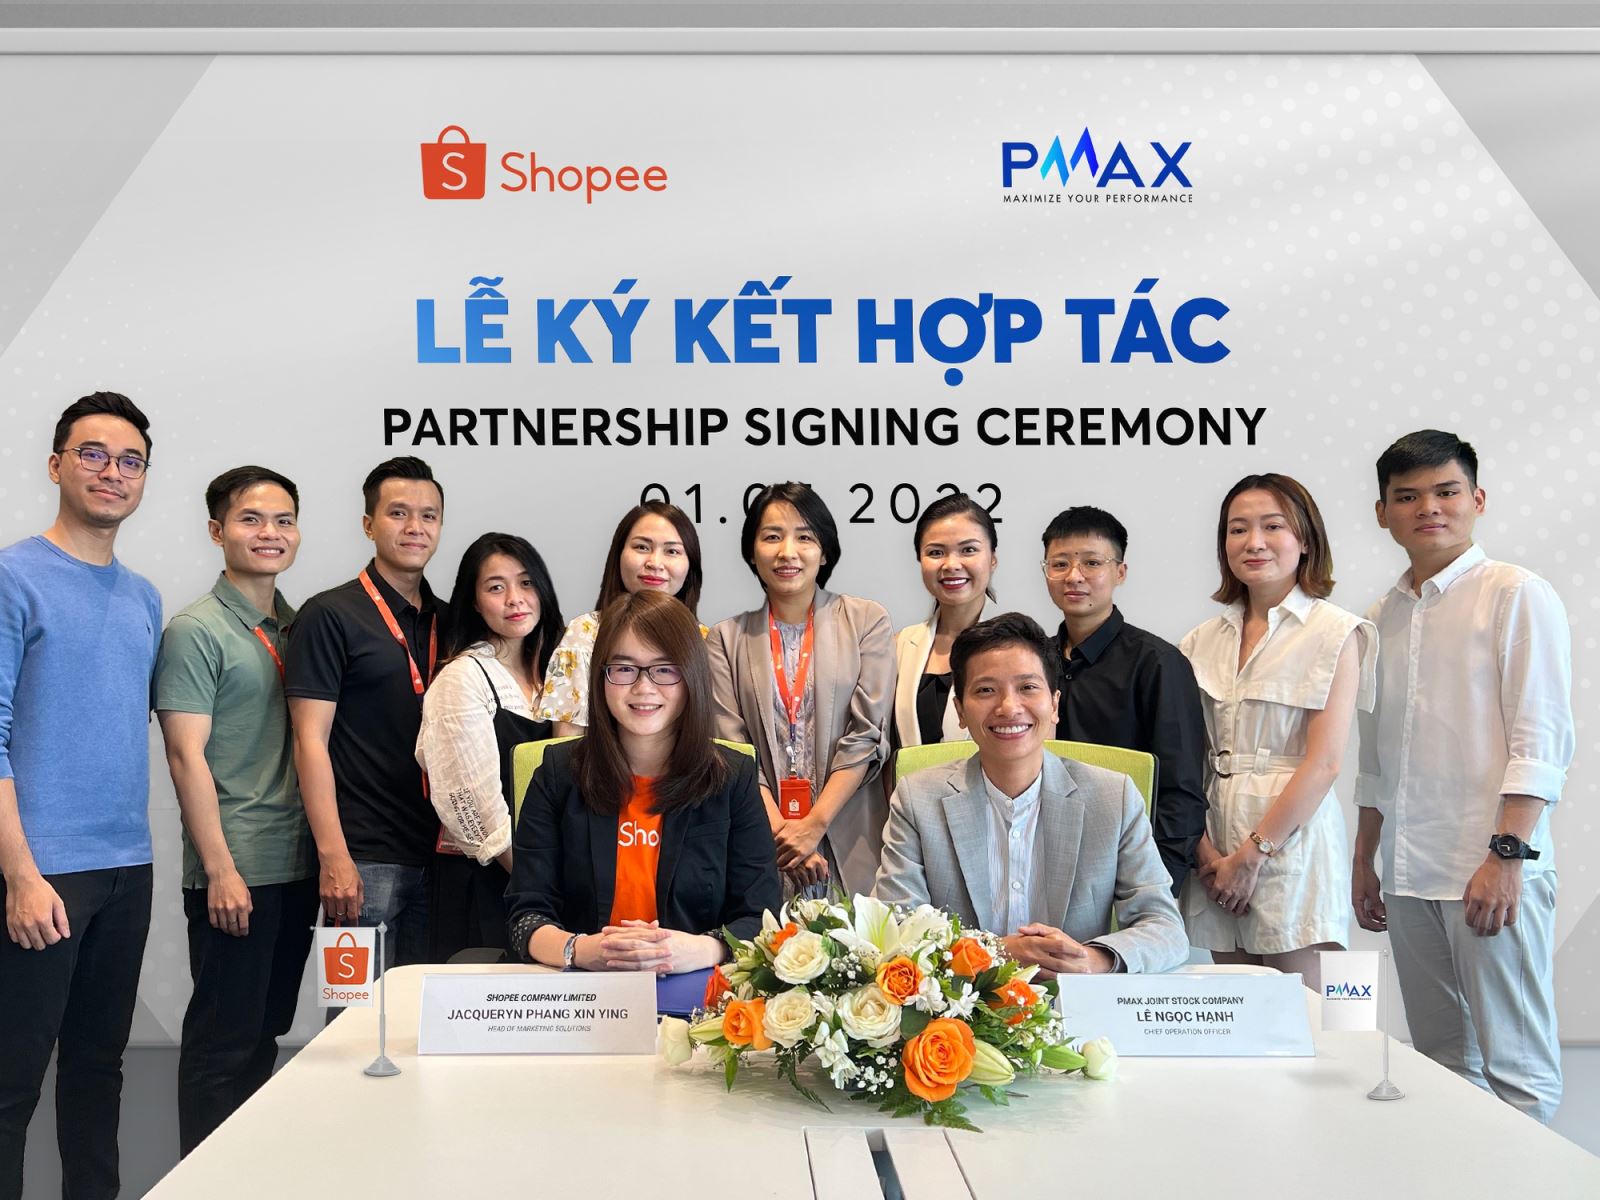 PMAX x Shopee: Hợp tác chiến lược và giải pháp tăng trưởng TMĐT